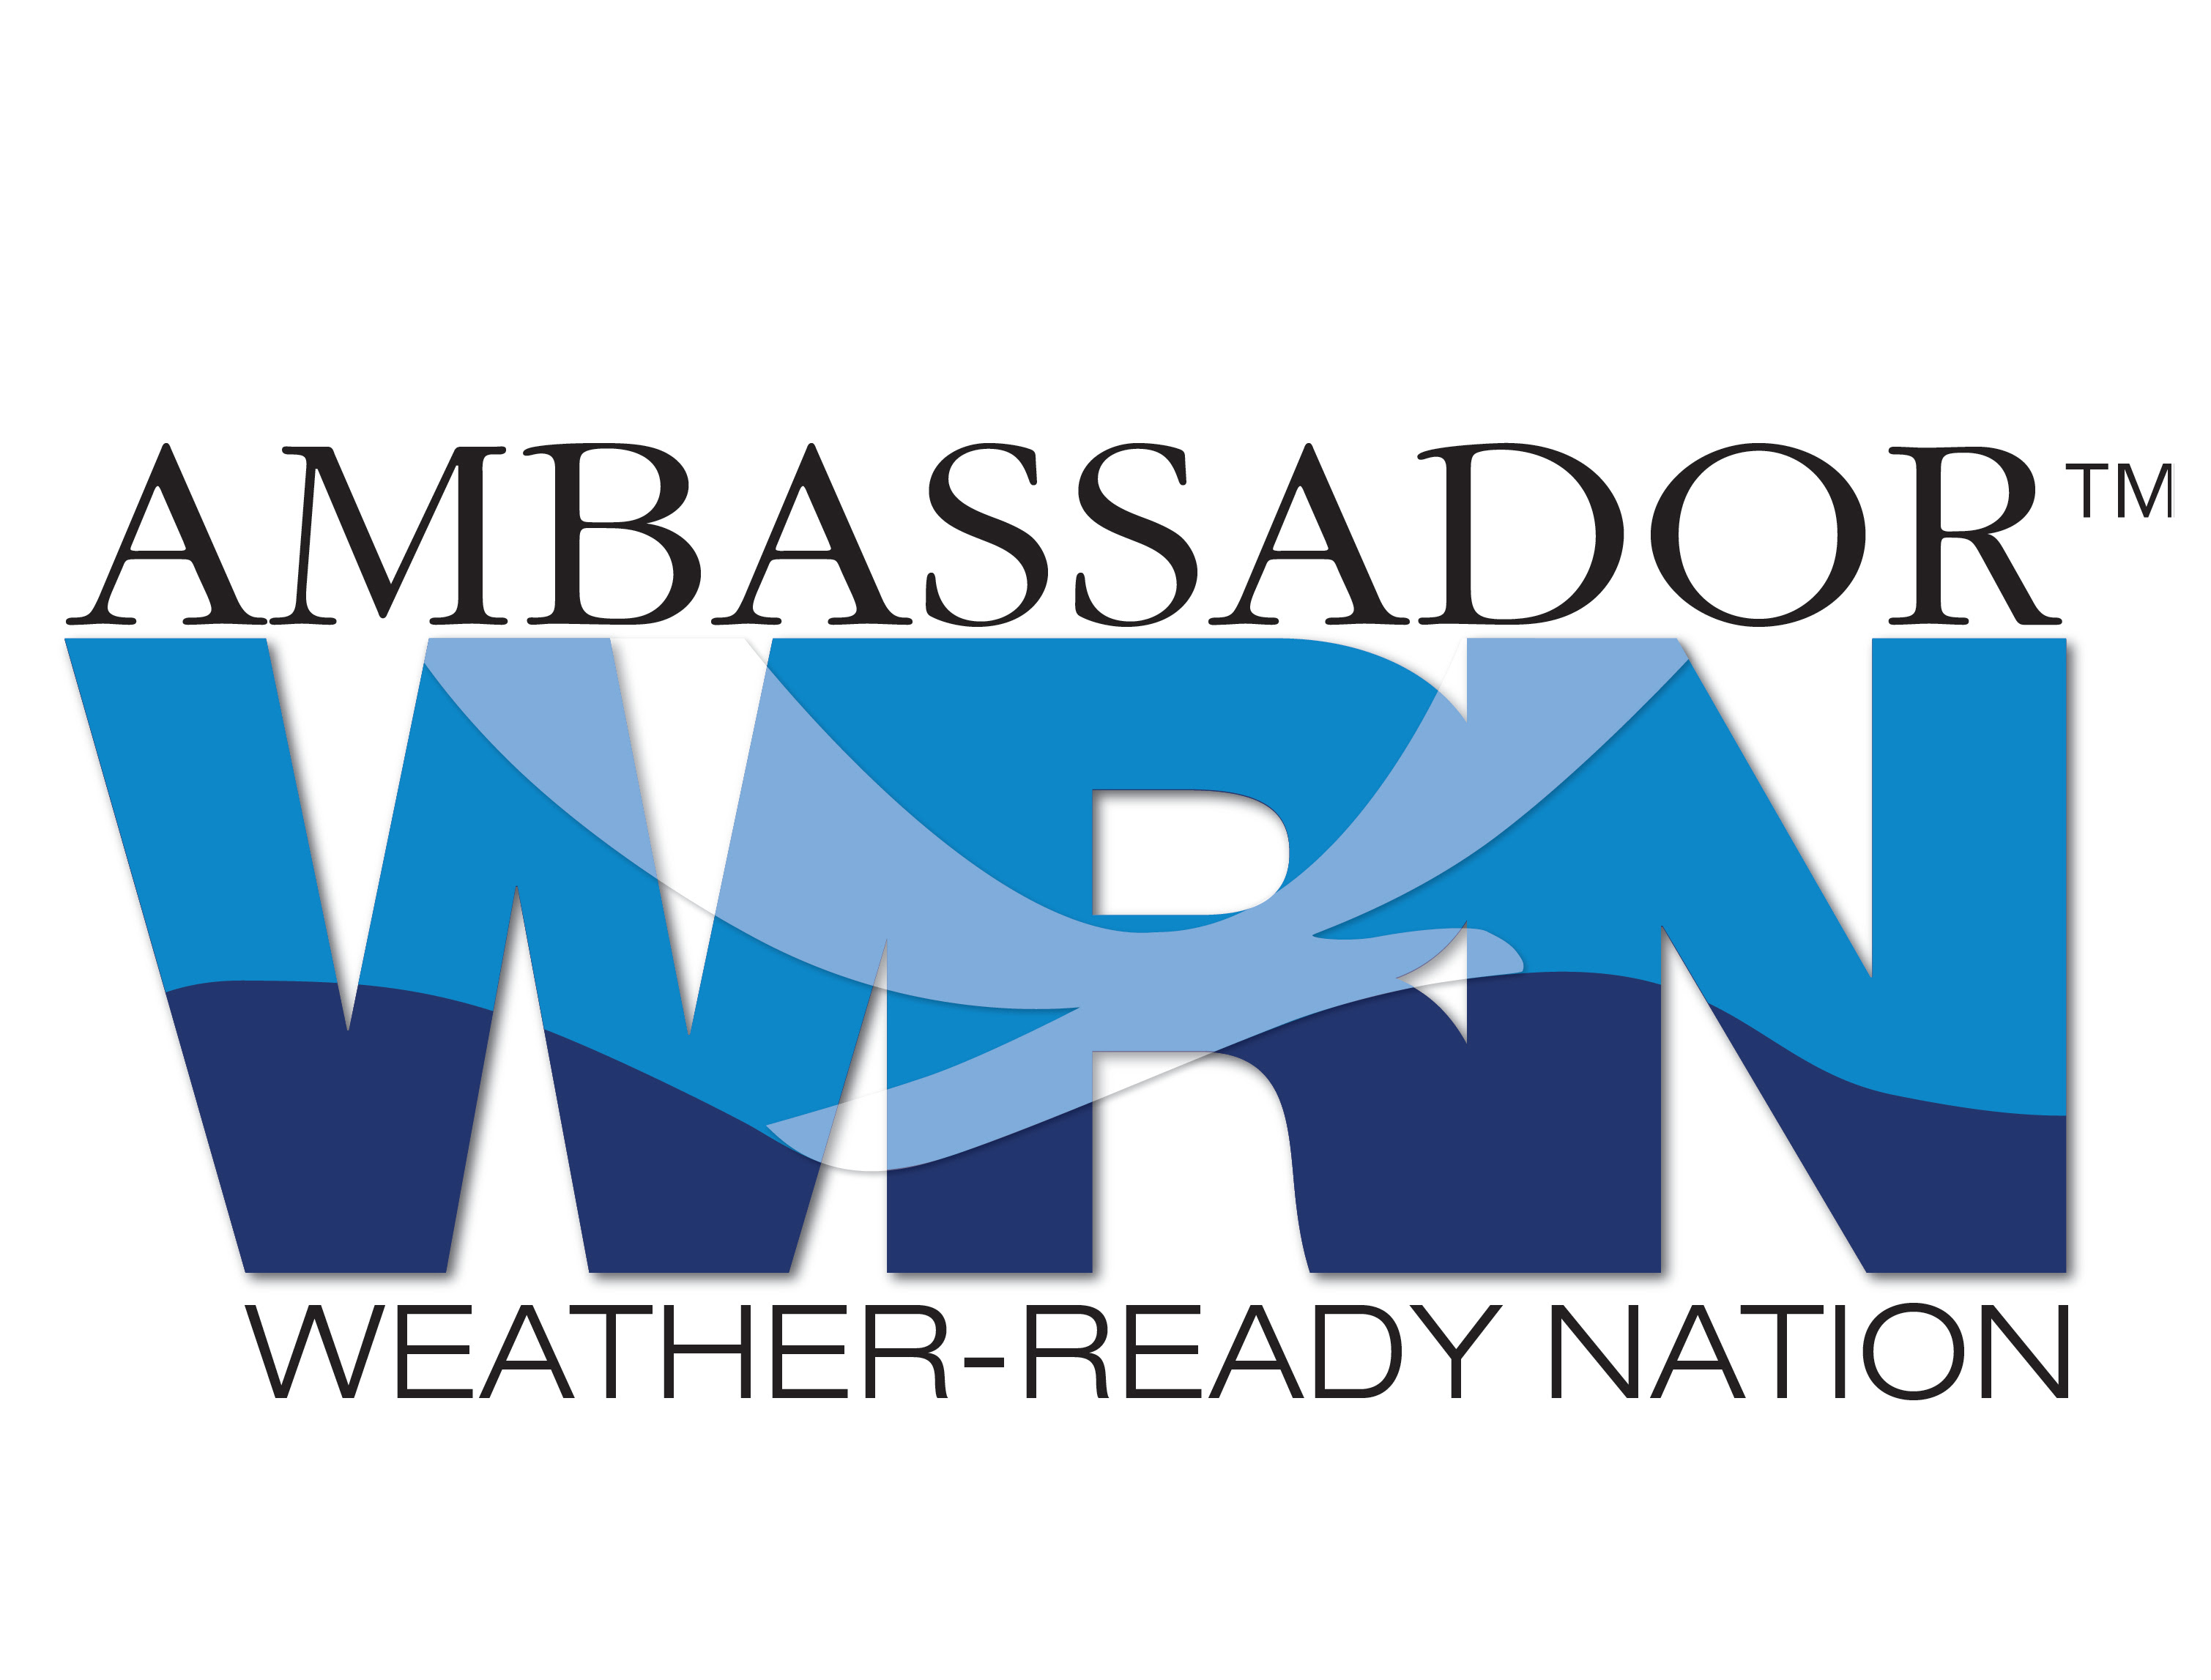 شعار سفير الأمة الجاهز للطقس.